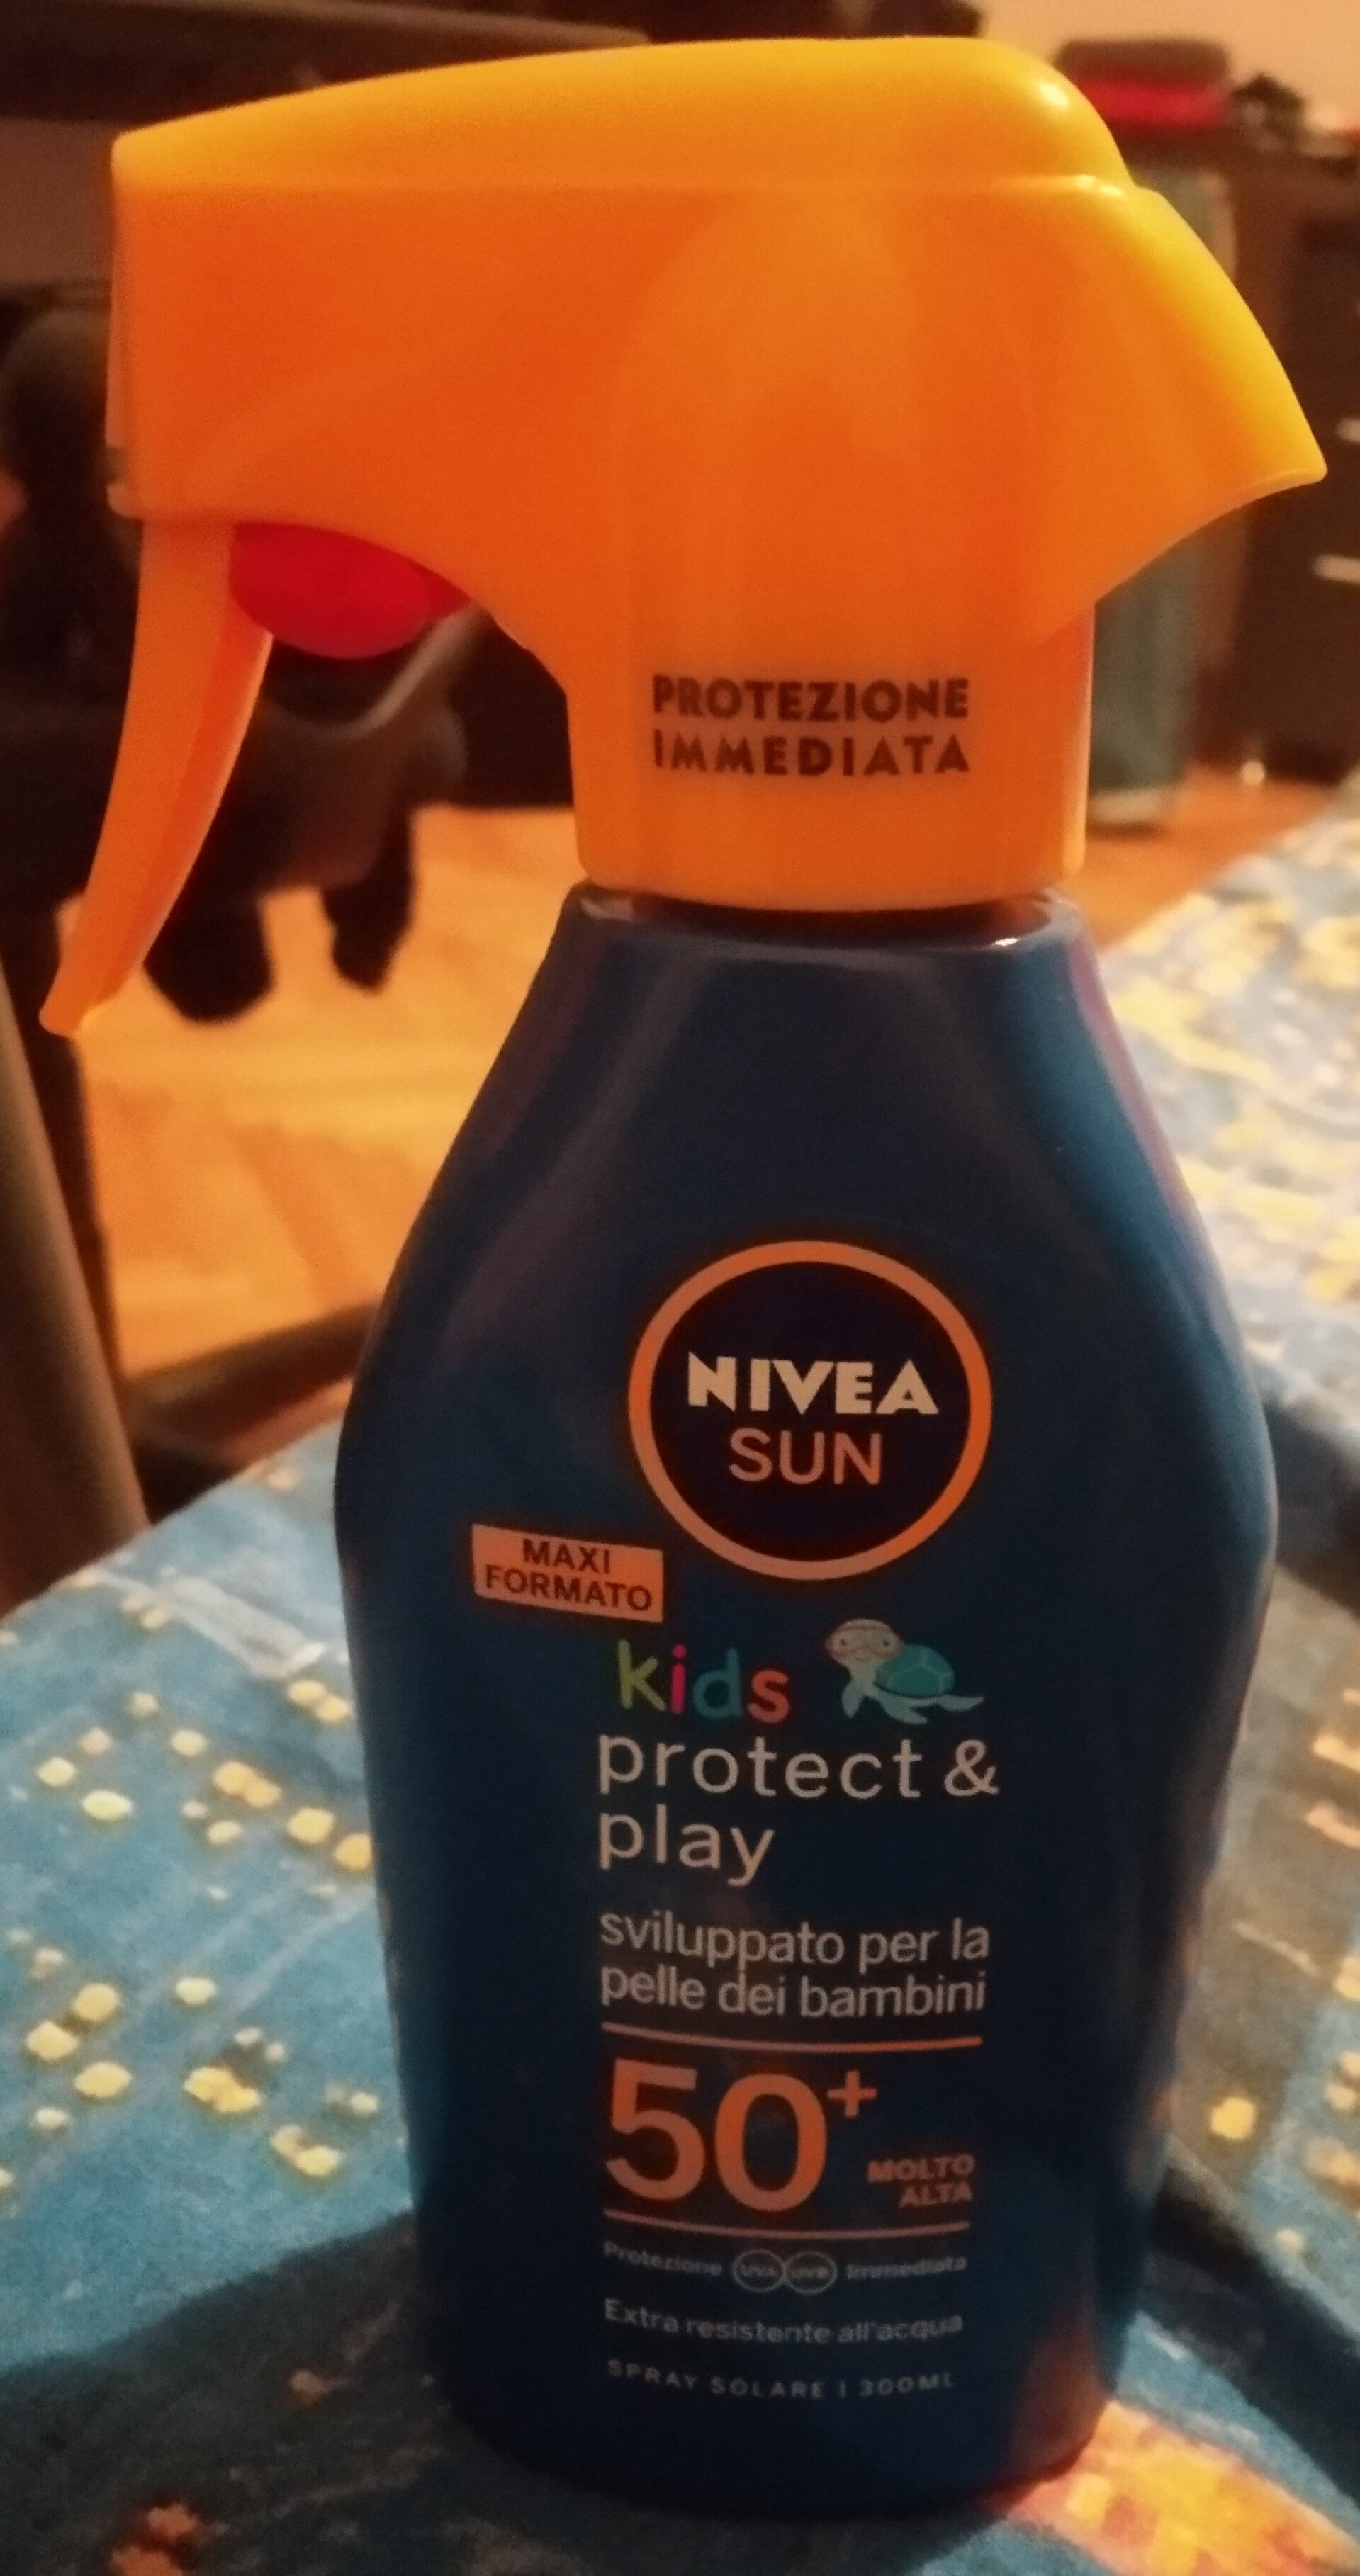 Nivea sun kids protect & play 50+ - Produit - it